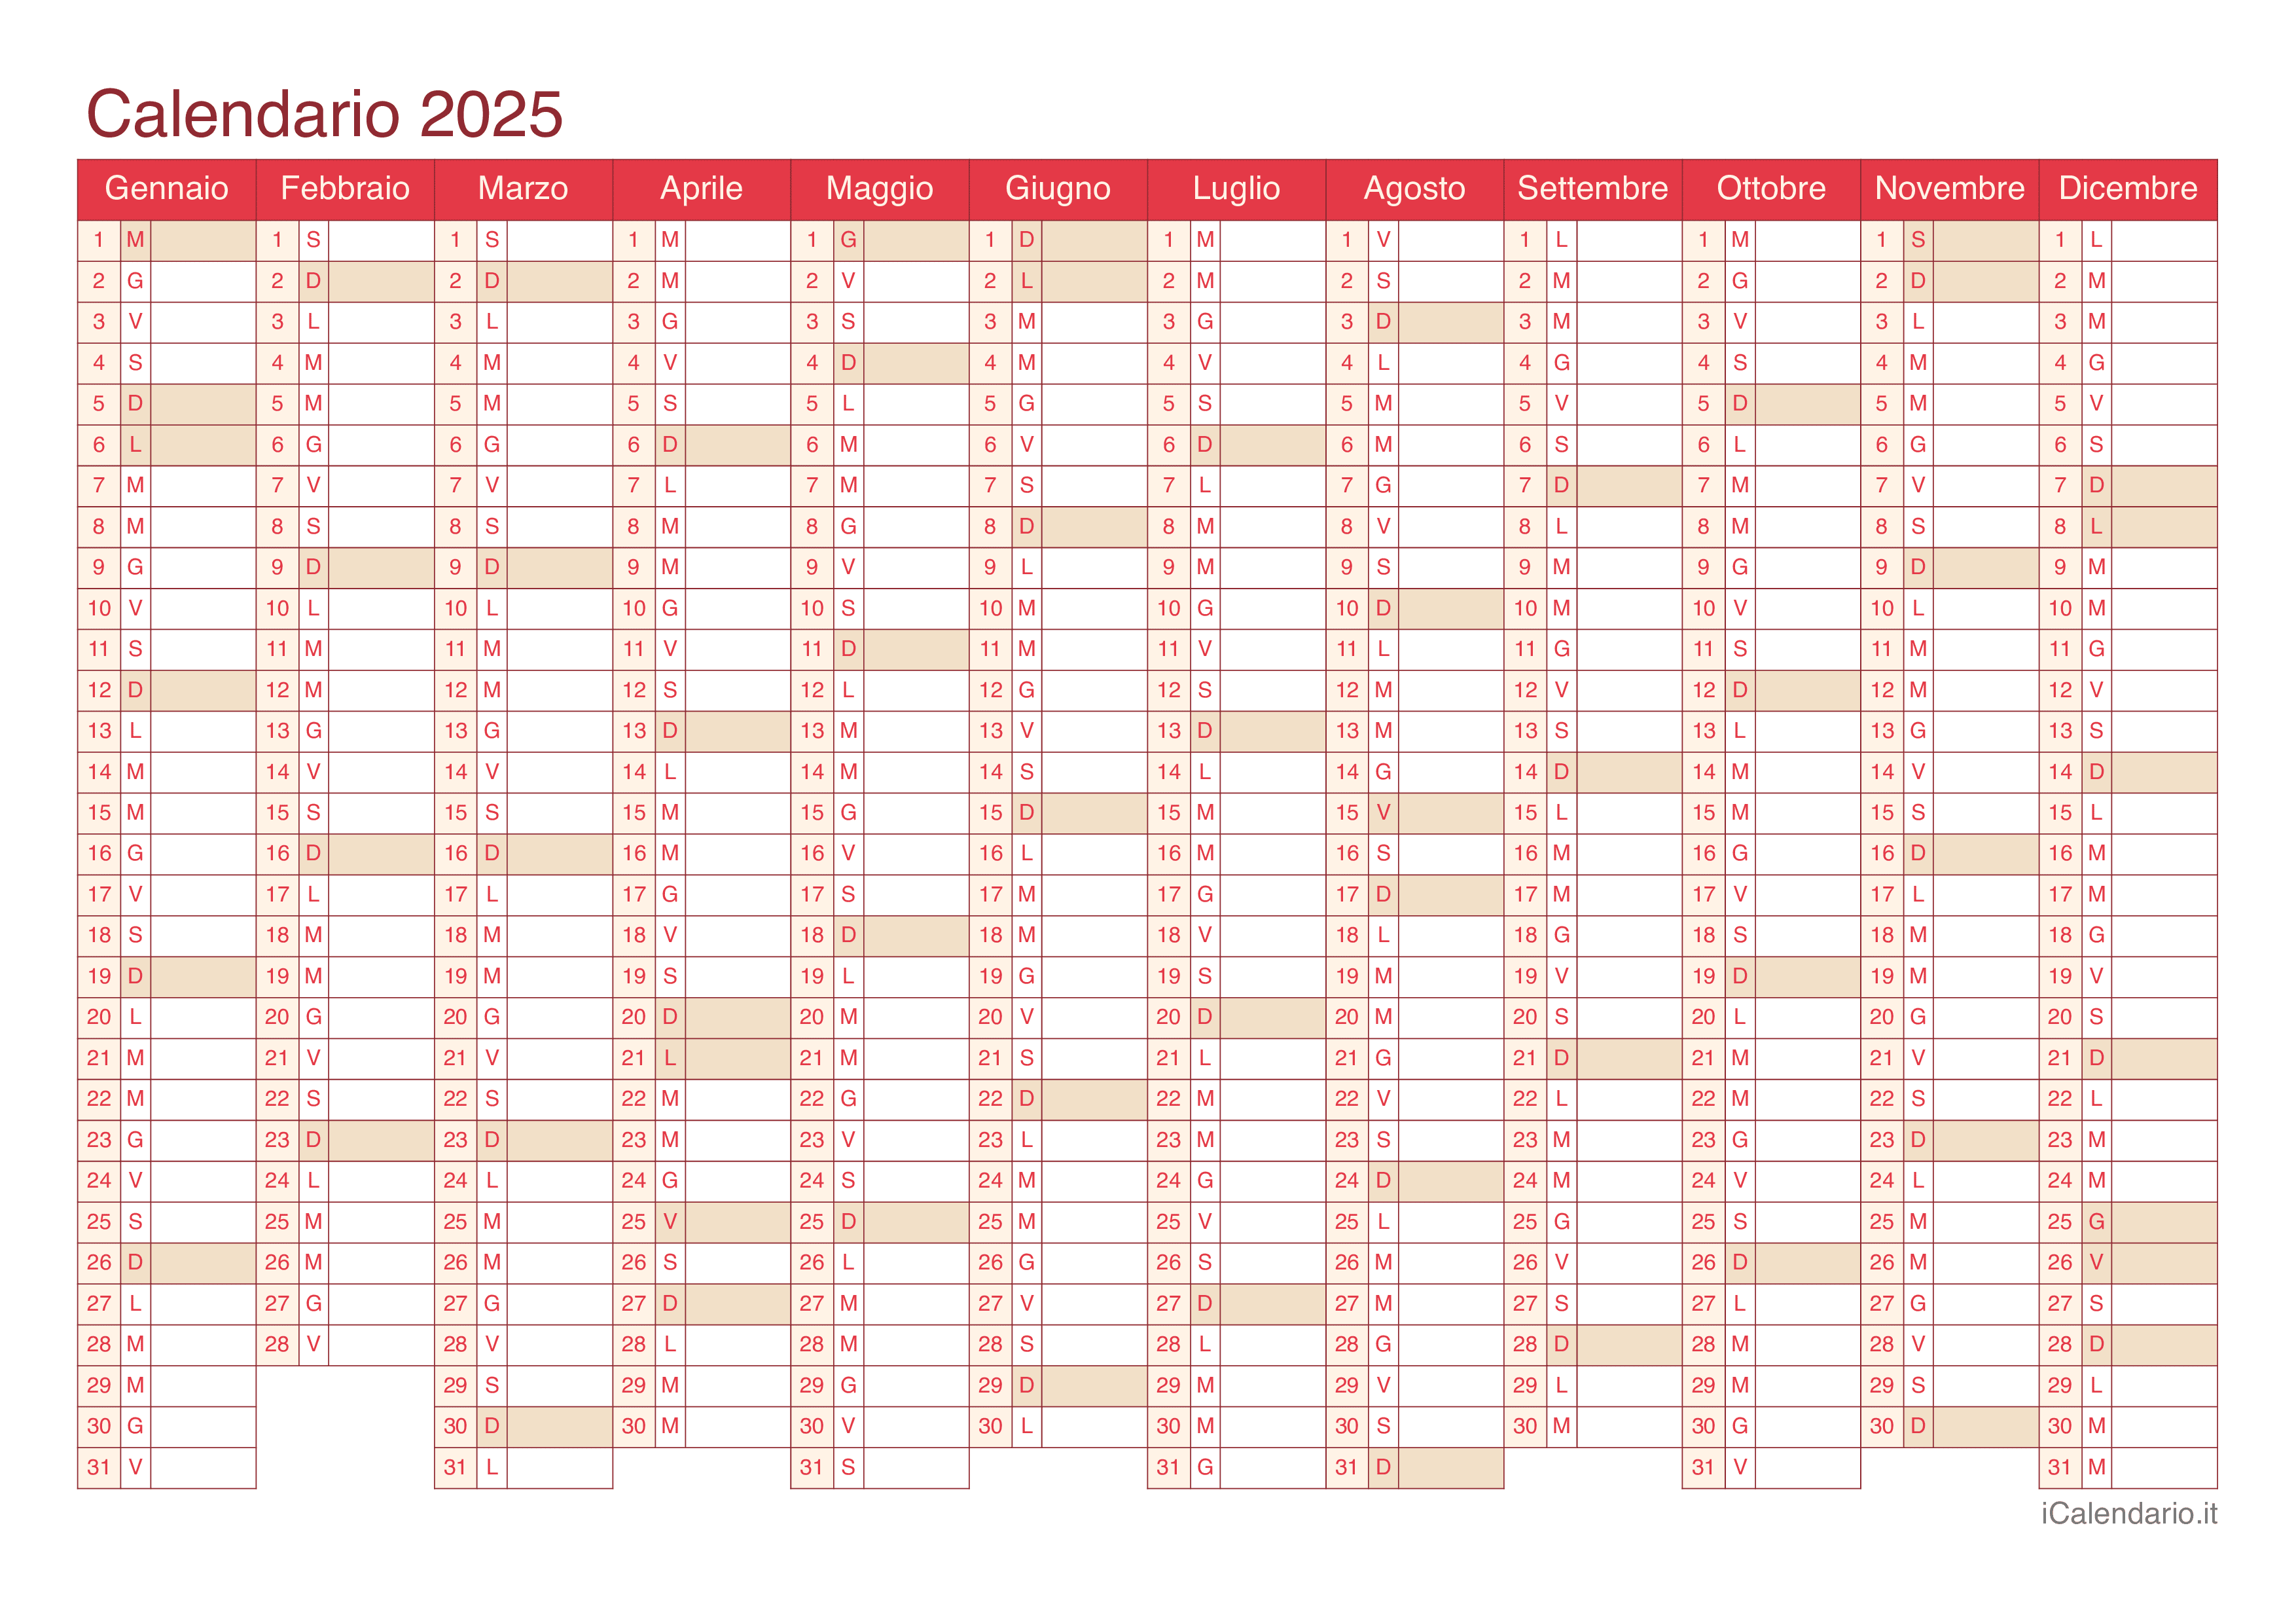 Calendario 2025 - Cherry